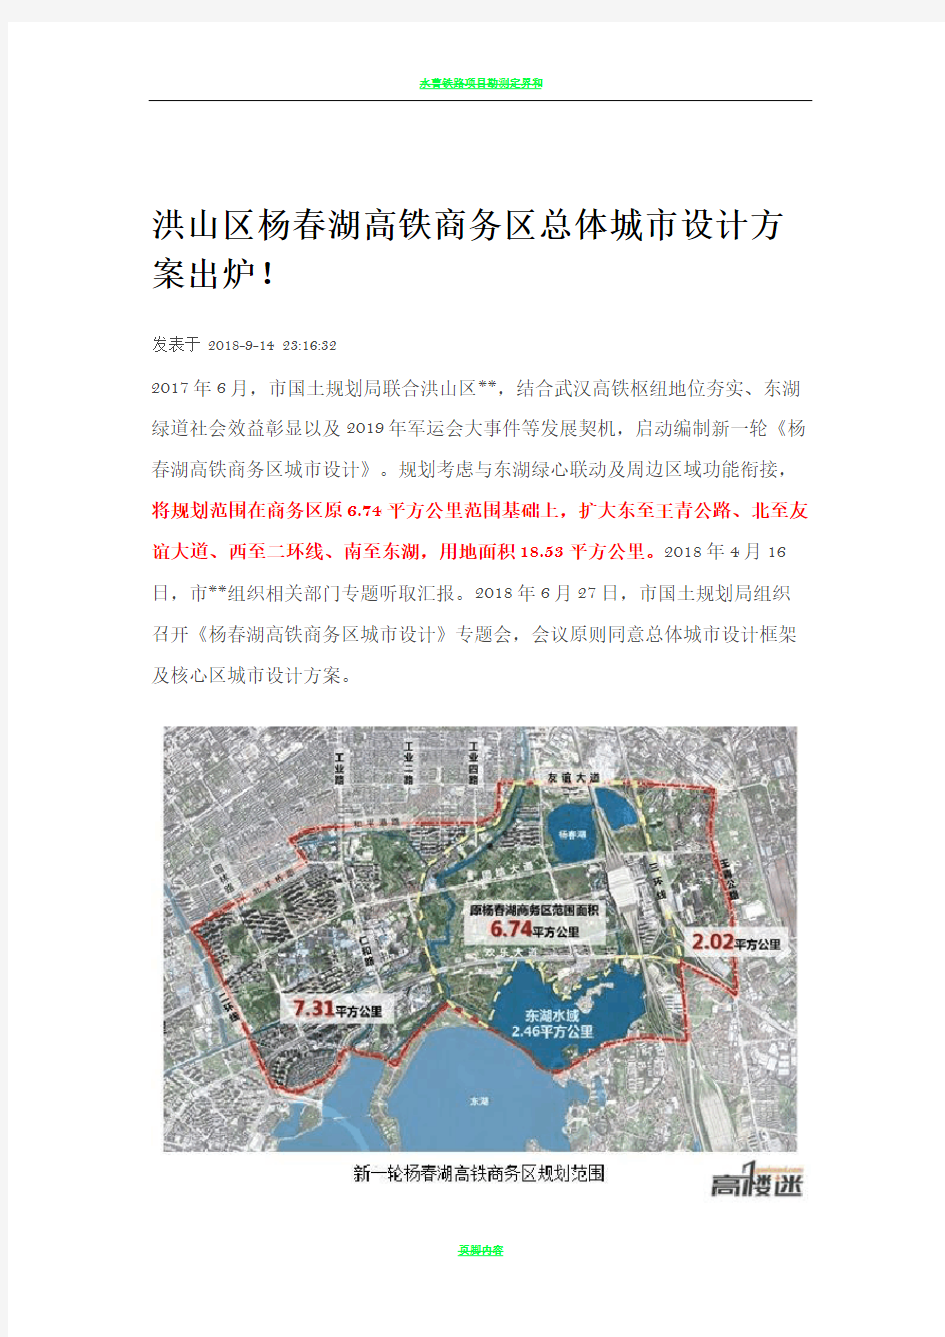 洪山区杨春湖高铁商务区总体城市设计方案出炉!